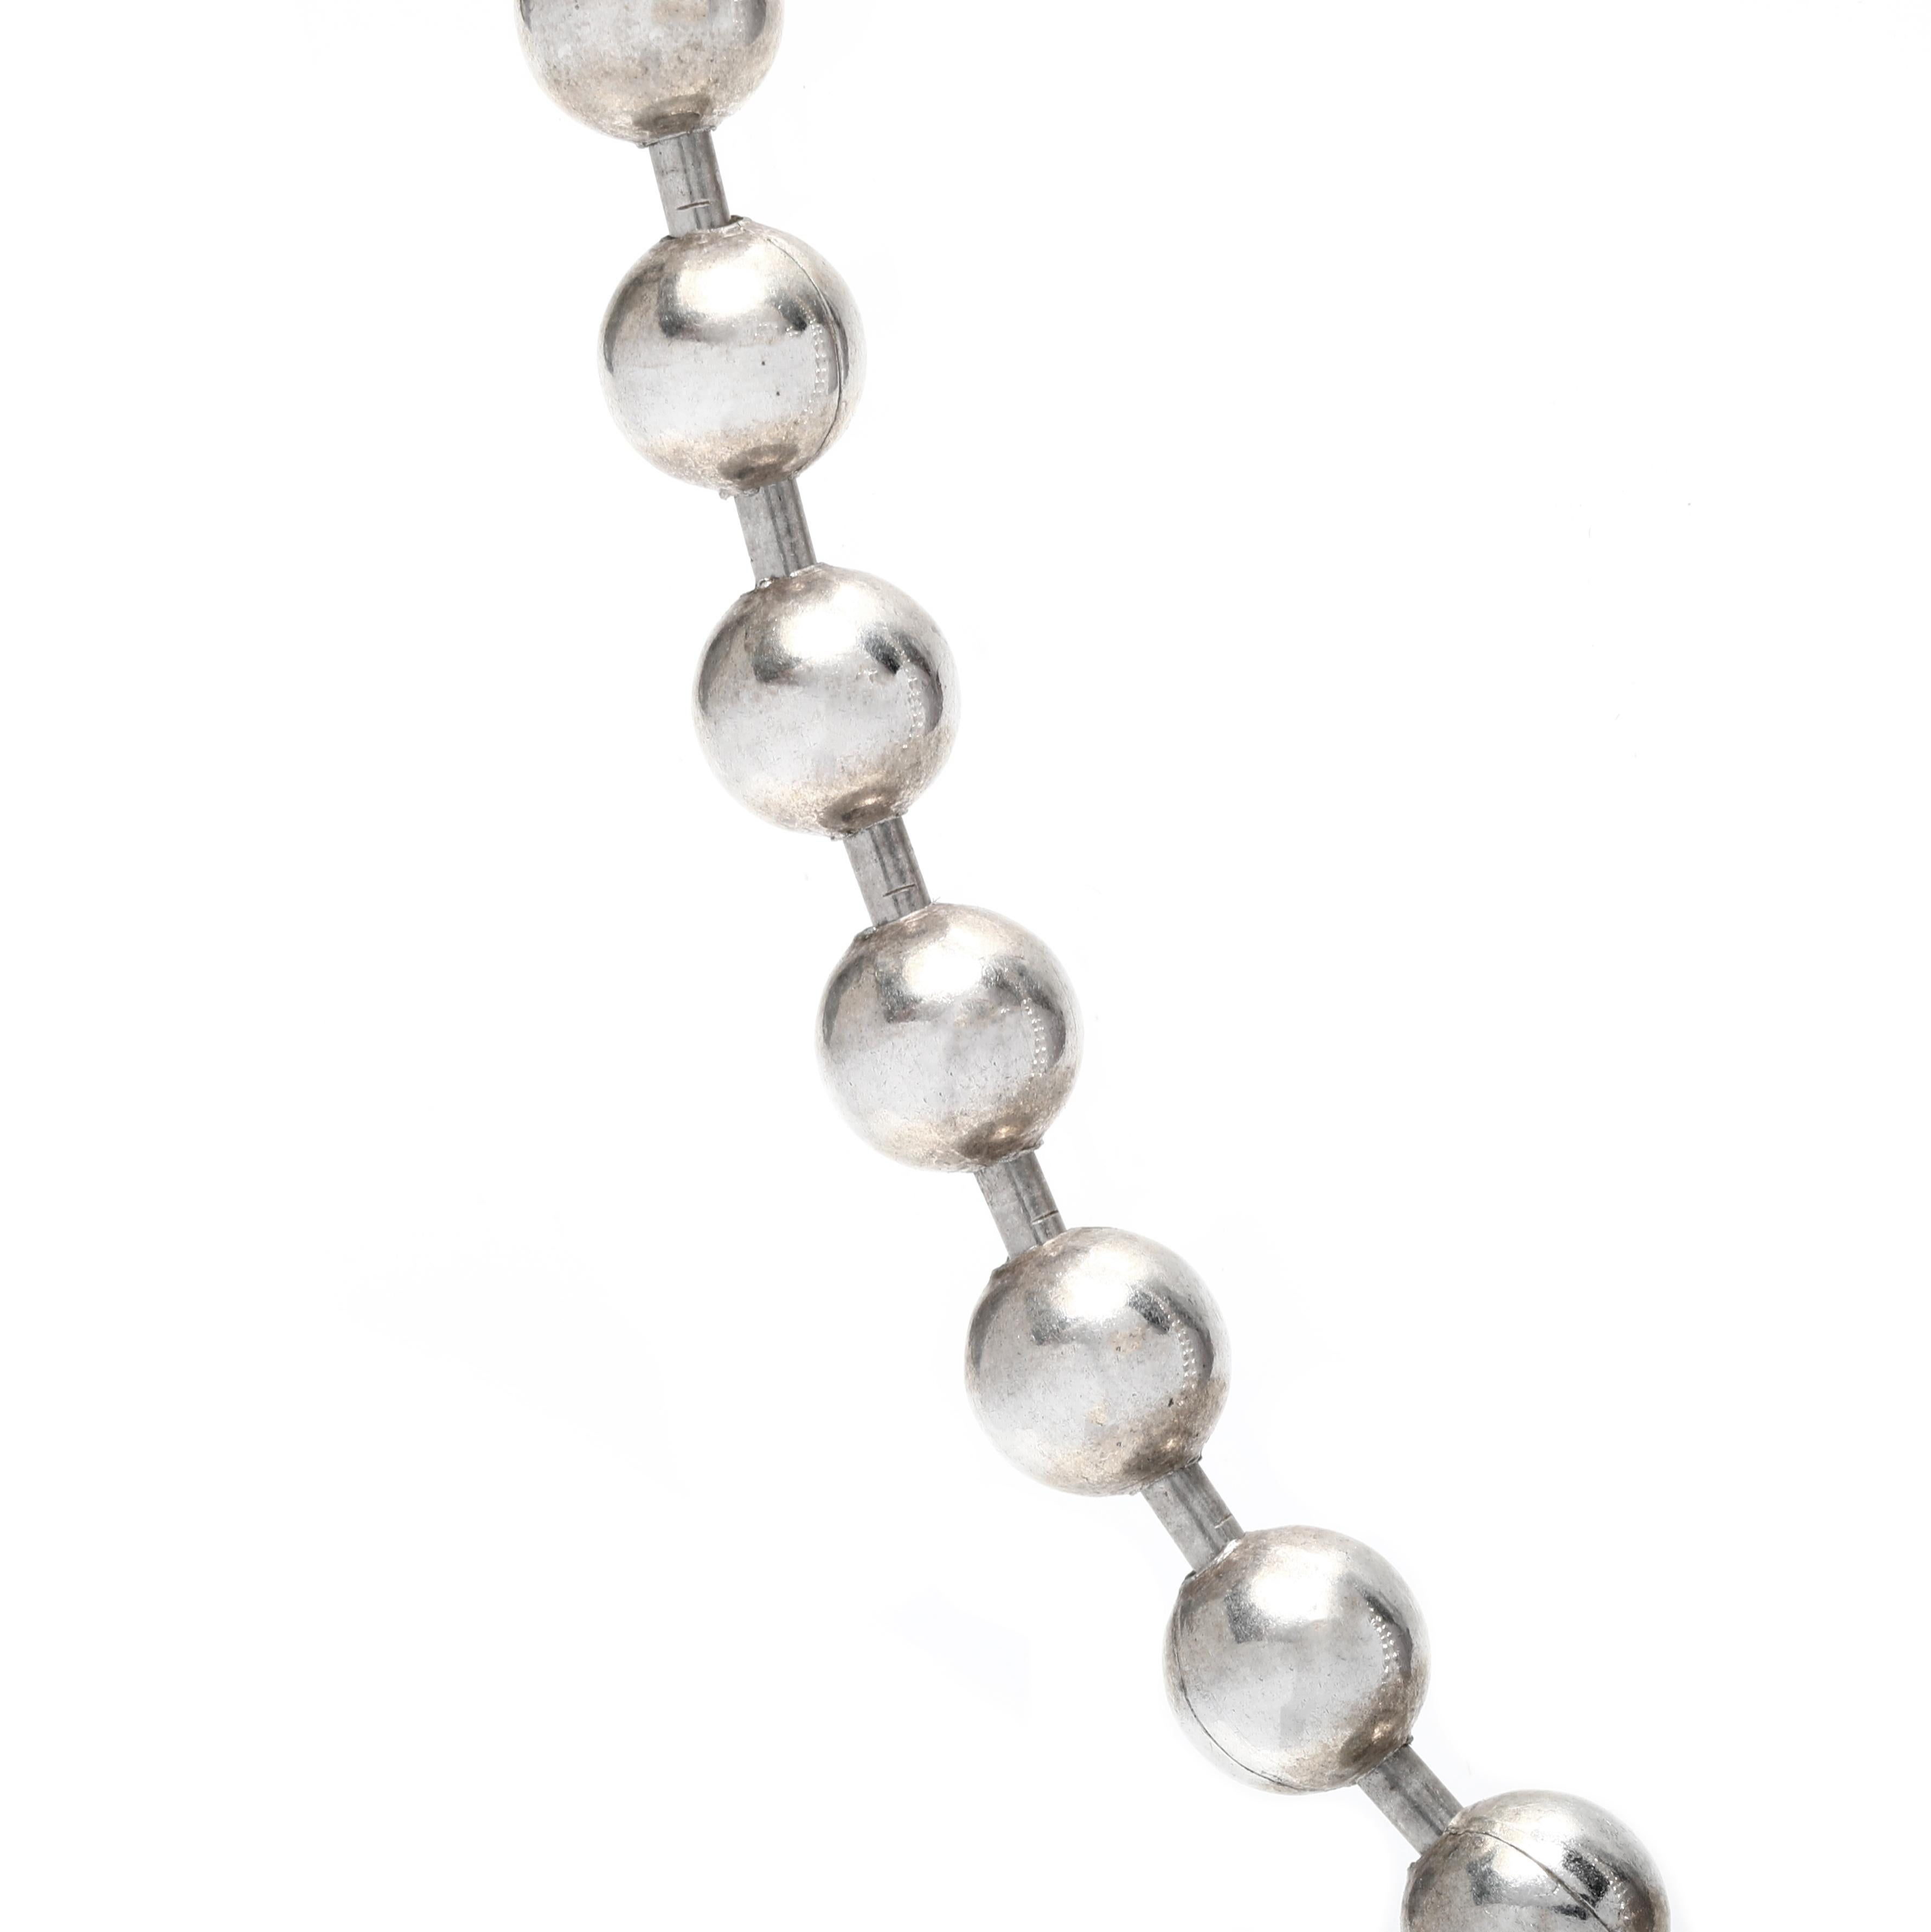 Diese große Perlenkette aus Sterlingsilber ist die perfekte Ergänzung für jedes Outfit. Die Länge der Perlenkette beträgt 18,50 cm und ist aus echtem Sterlingsilber gefertigt, das für einen atemberaubenden und auffälligen Look sorgt. Egal, ob Sie